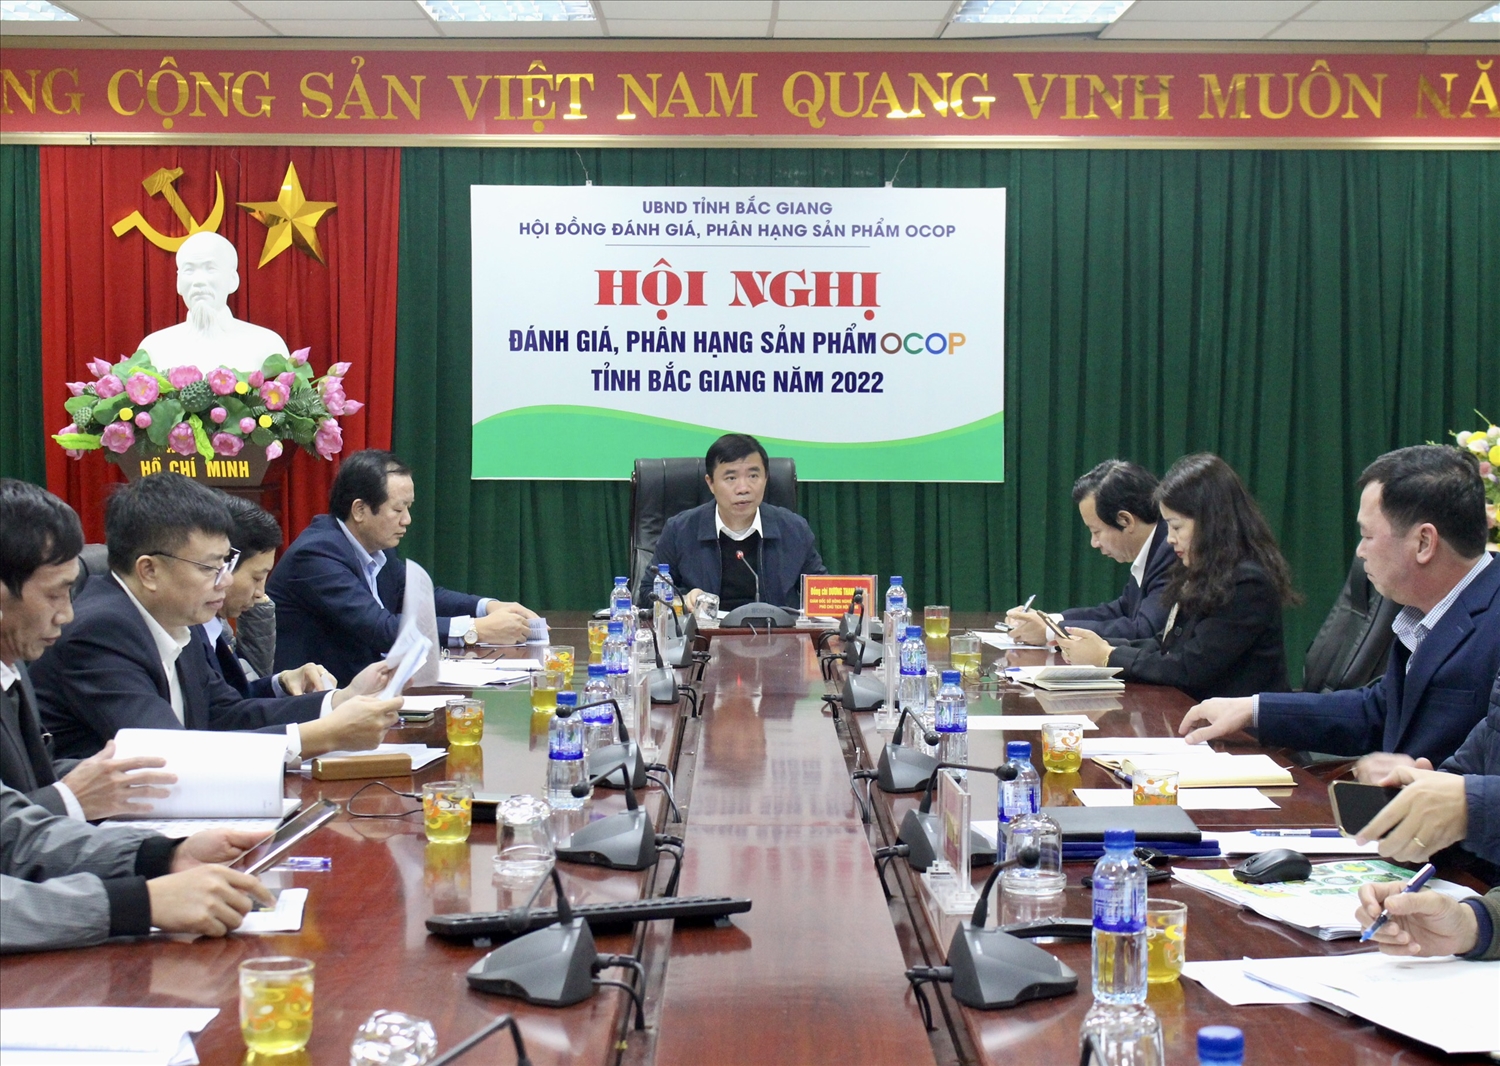 Quang cảnh Hội nghị đánh giá, phân hạng sản phẩm OCOP tỉnh Bắc Giang năm 2022